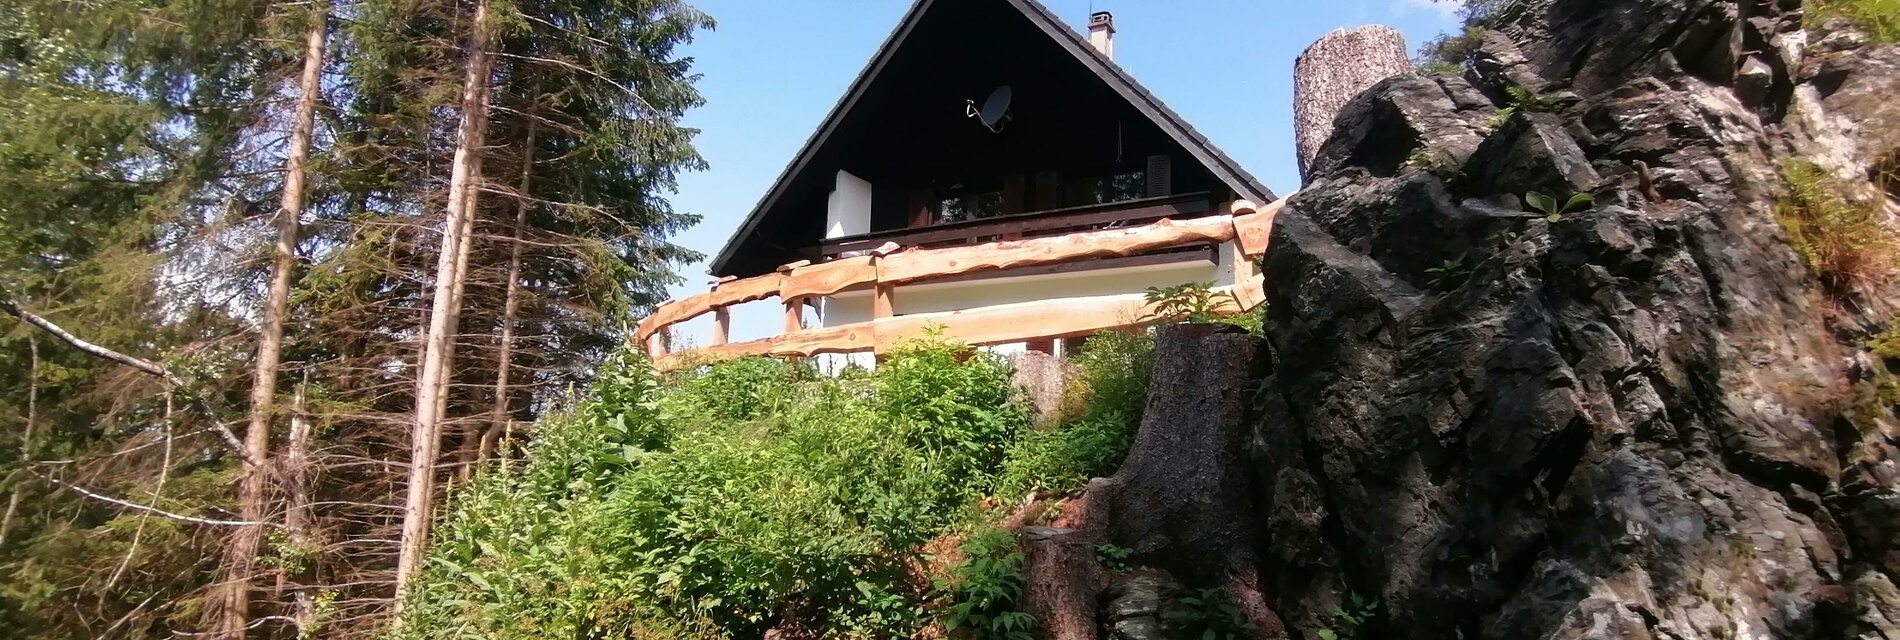 FerienhausFuchsbau-Außenansicht-Murtal-Steiermark